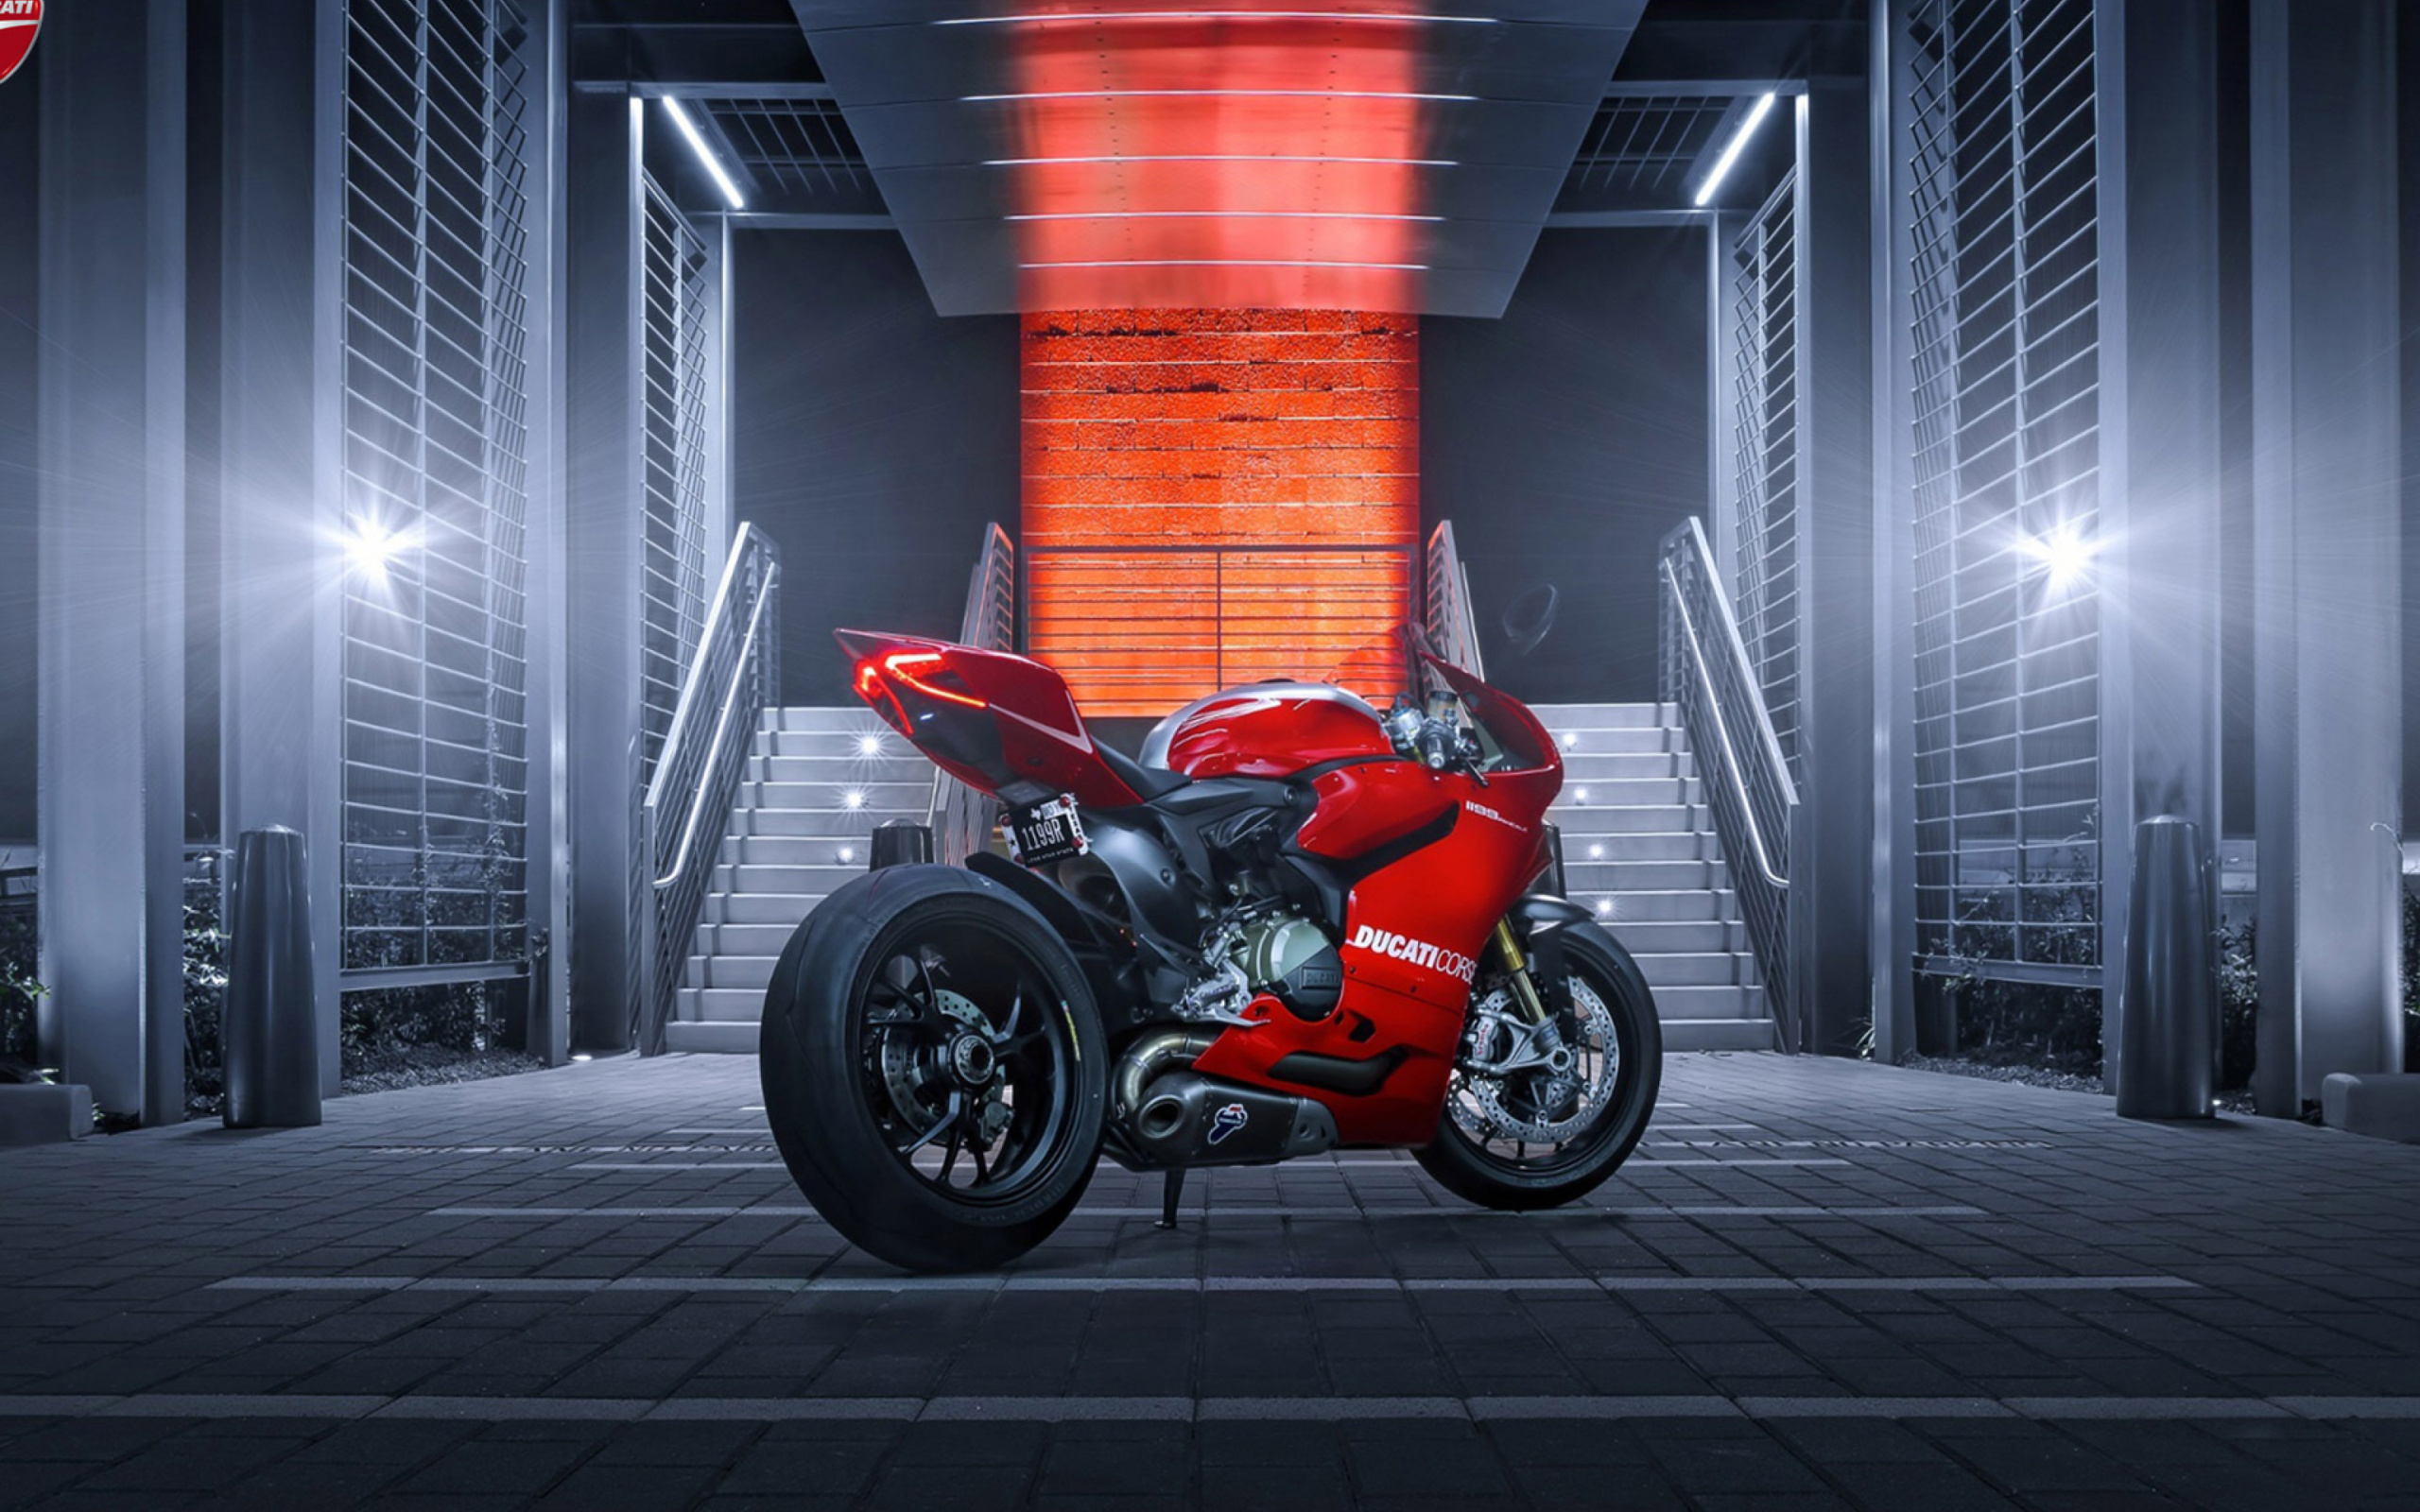 Das Ducati Corse Wallpaper 2560x1600